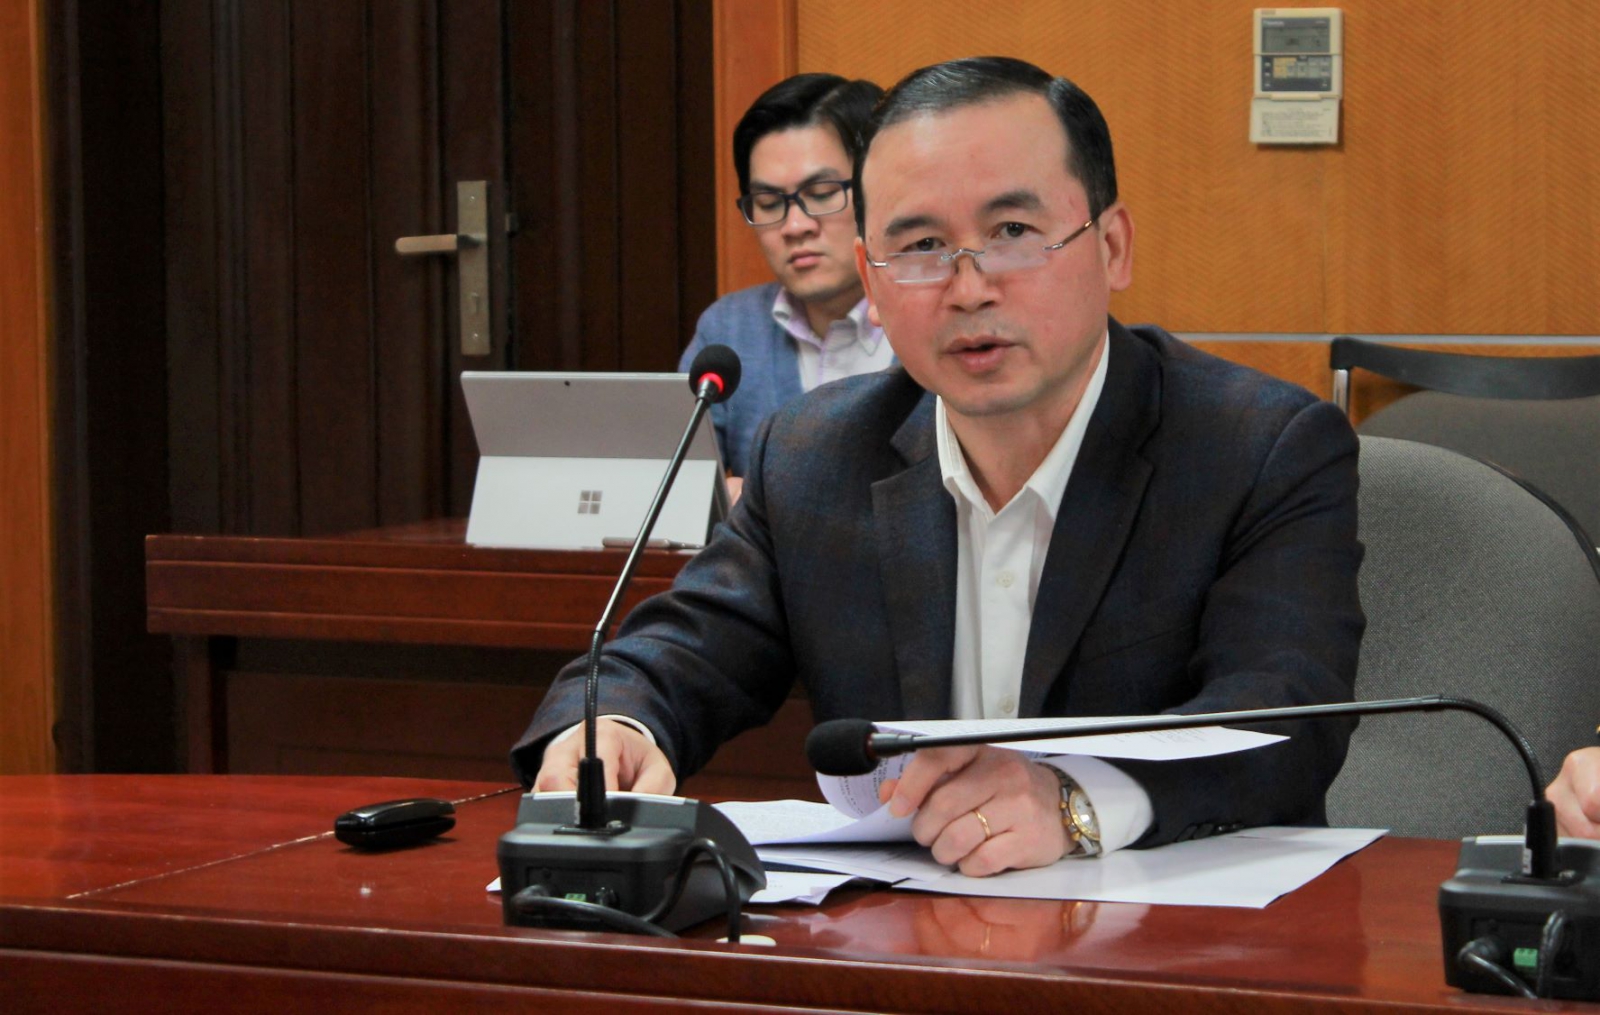 Ông Phan Văn Chinh, đề xuất 4 nhóm giải pháp nhằm đẩy mạnh hoạt động xuất nhập khẩu trong bối cảnh phòng, chống dịch bệnh viêm đường hô hấp cấp